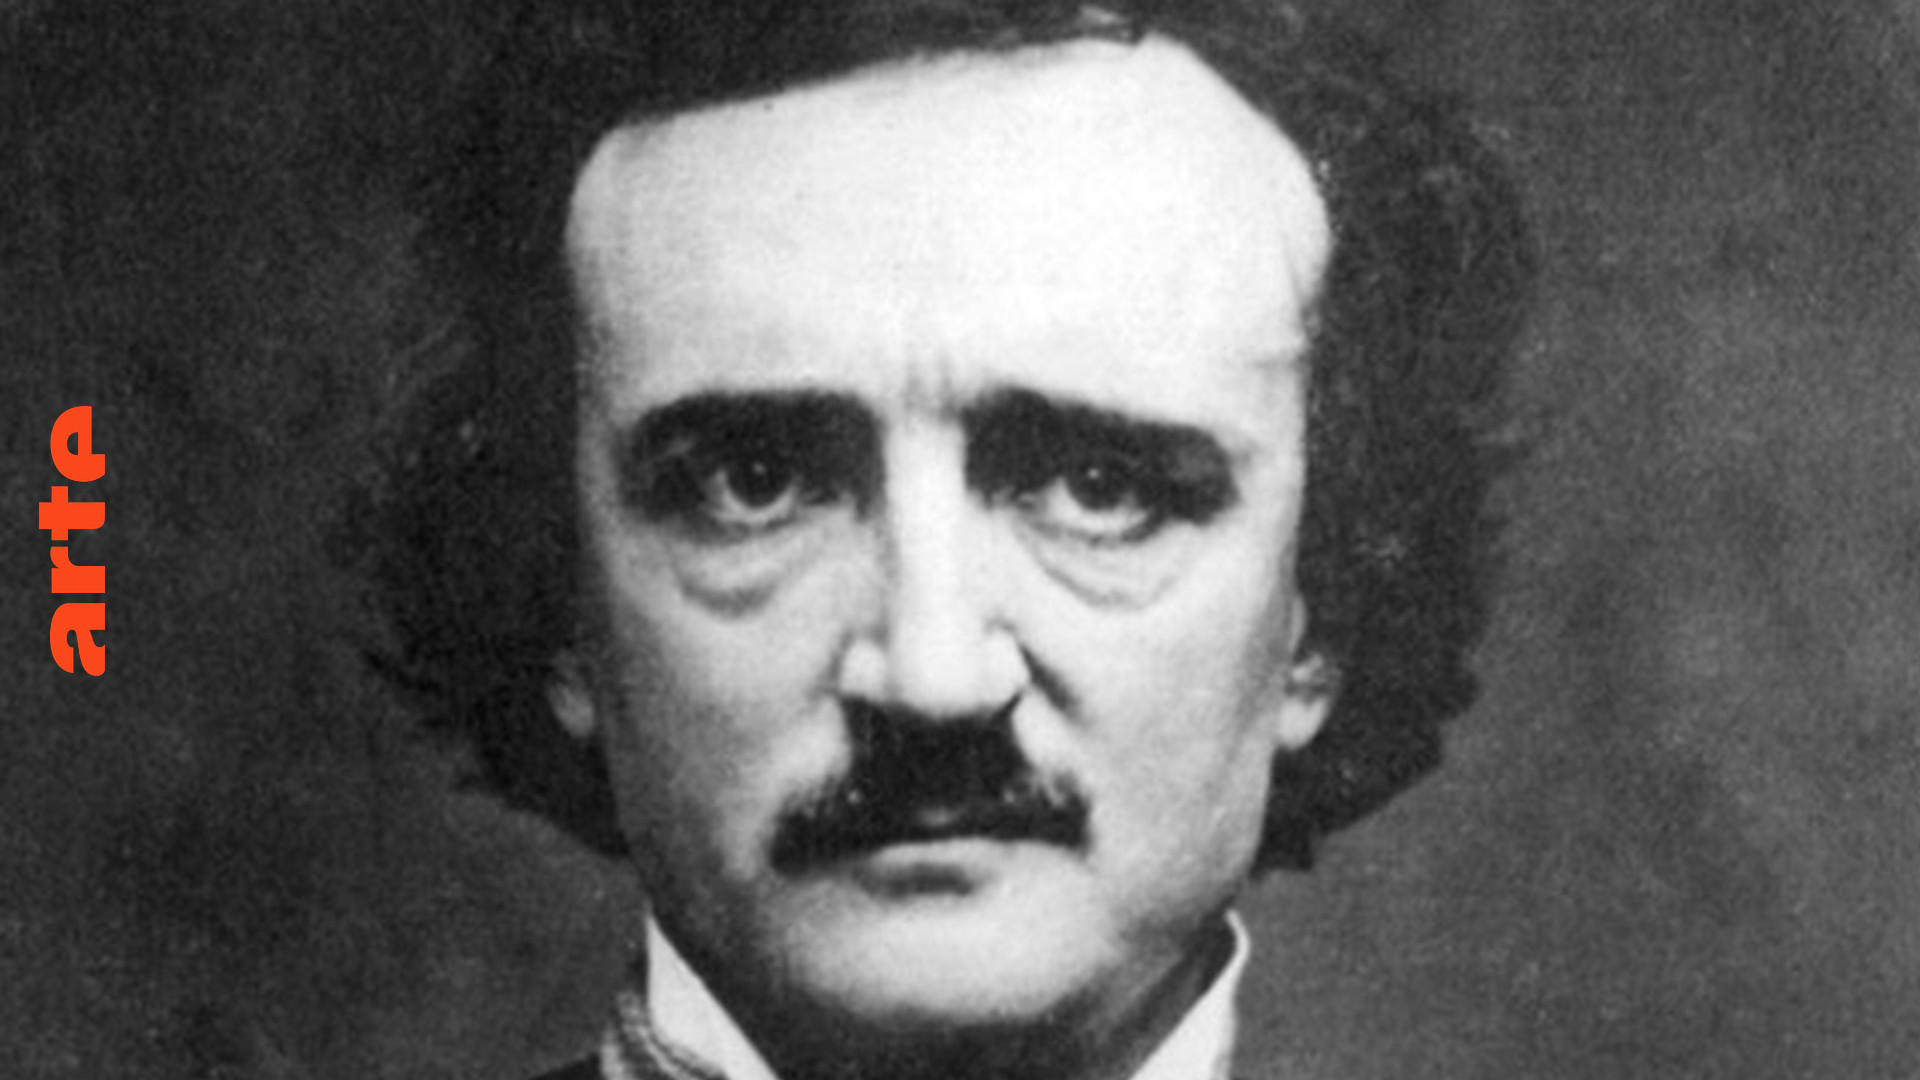 Blow up - Edgar Allan Poe im Film